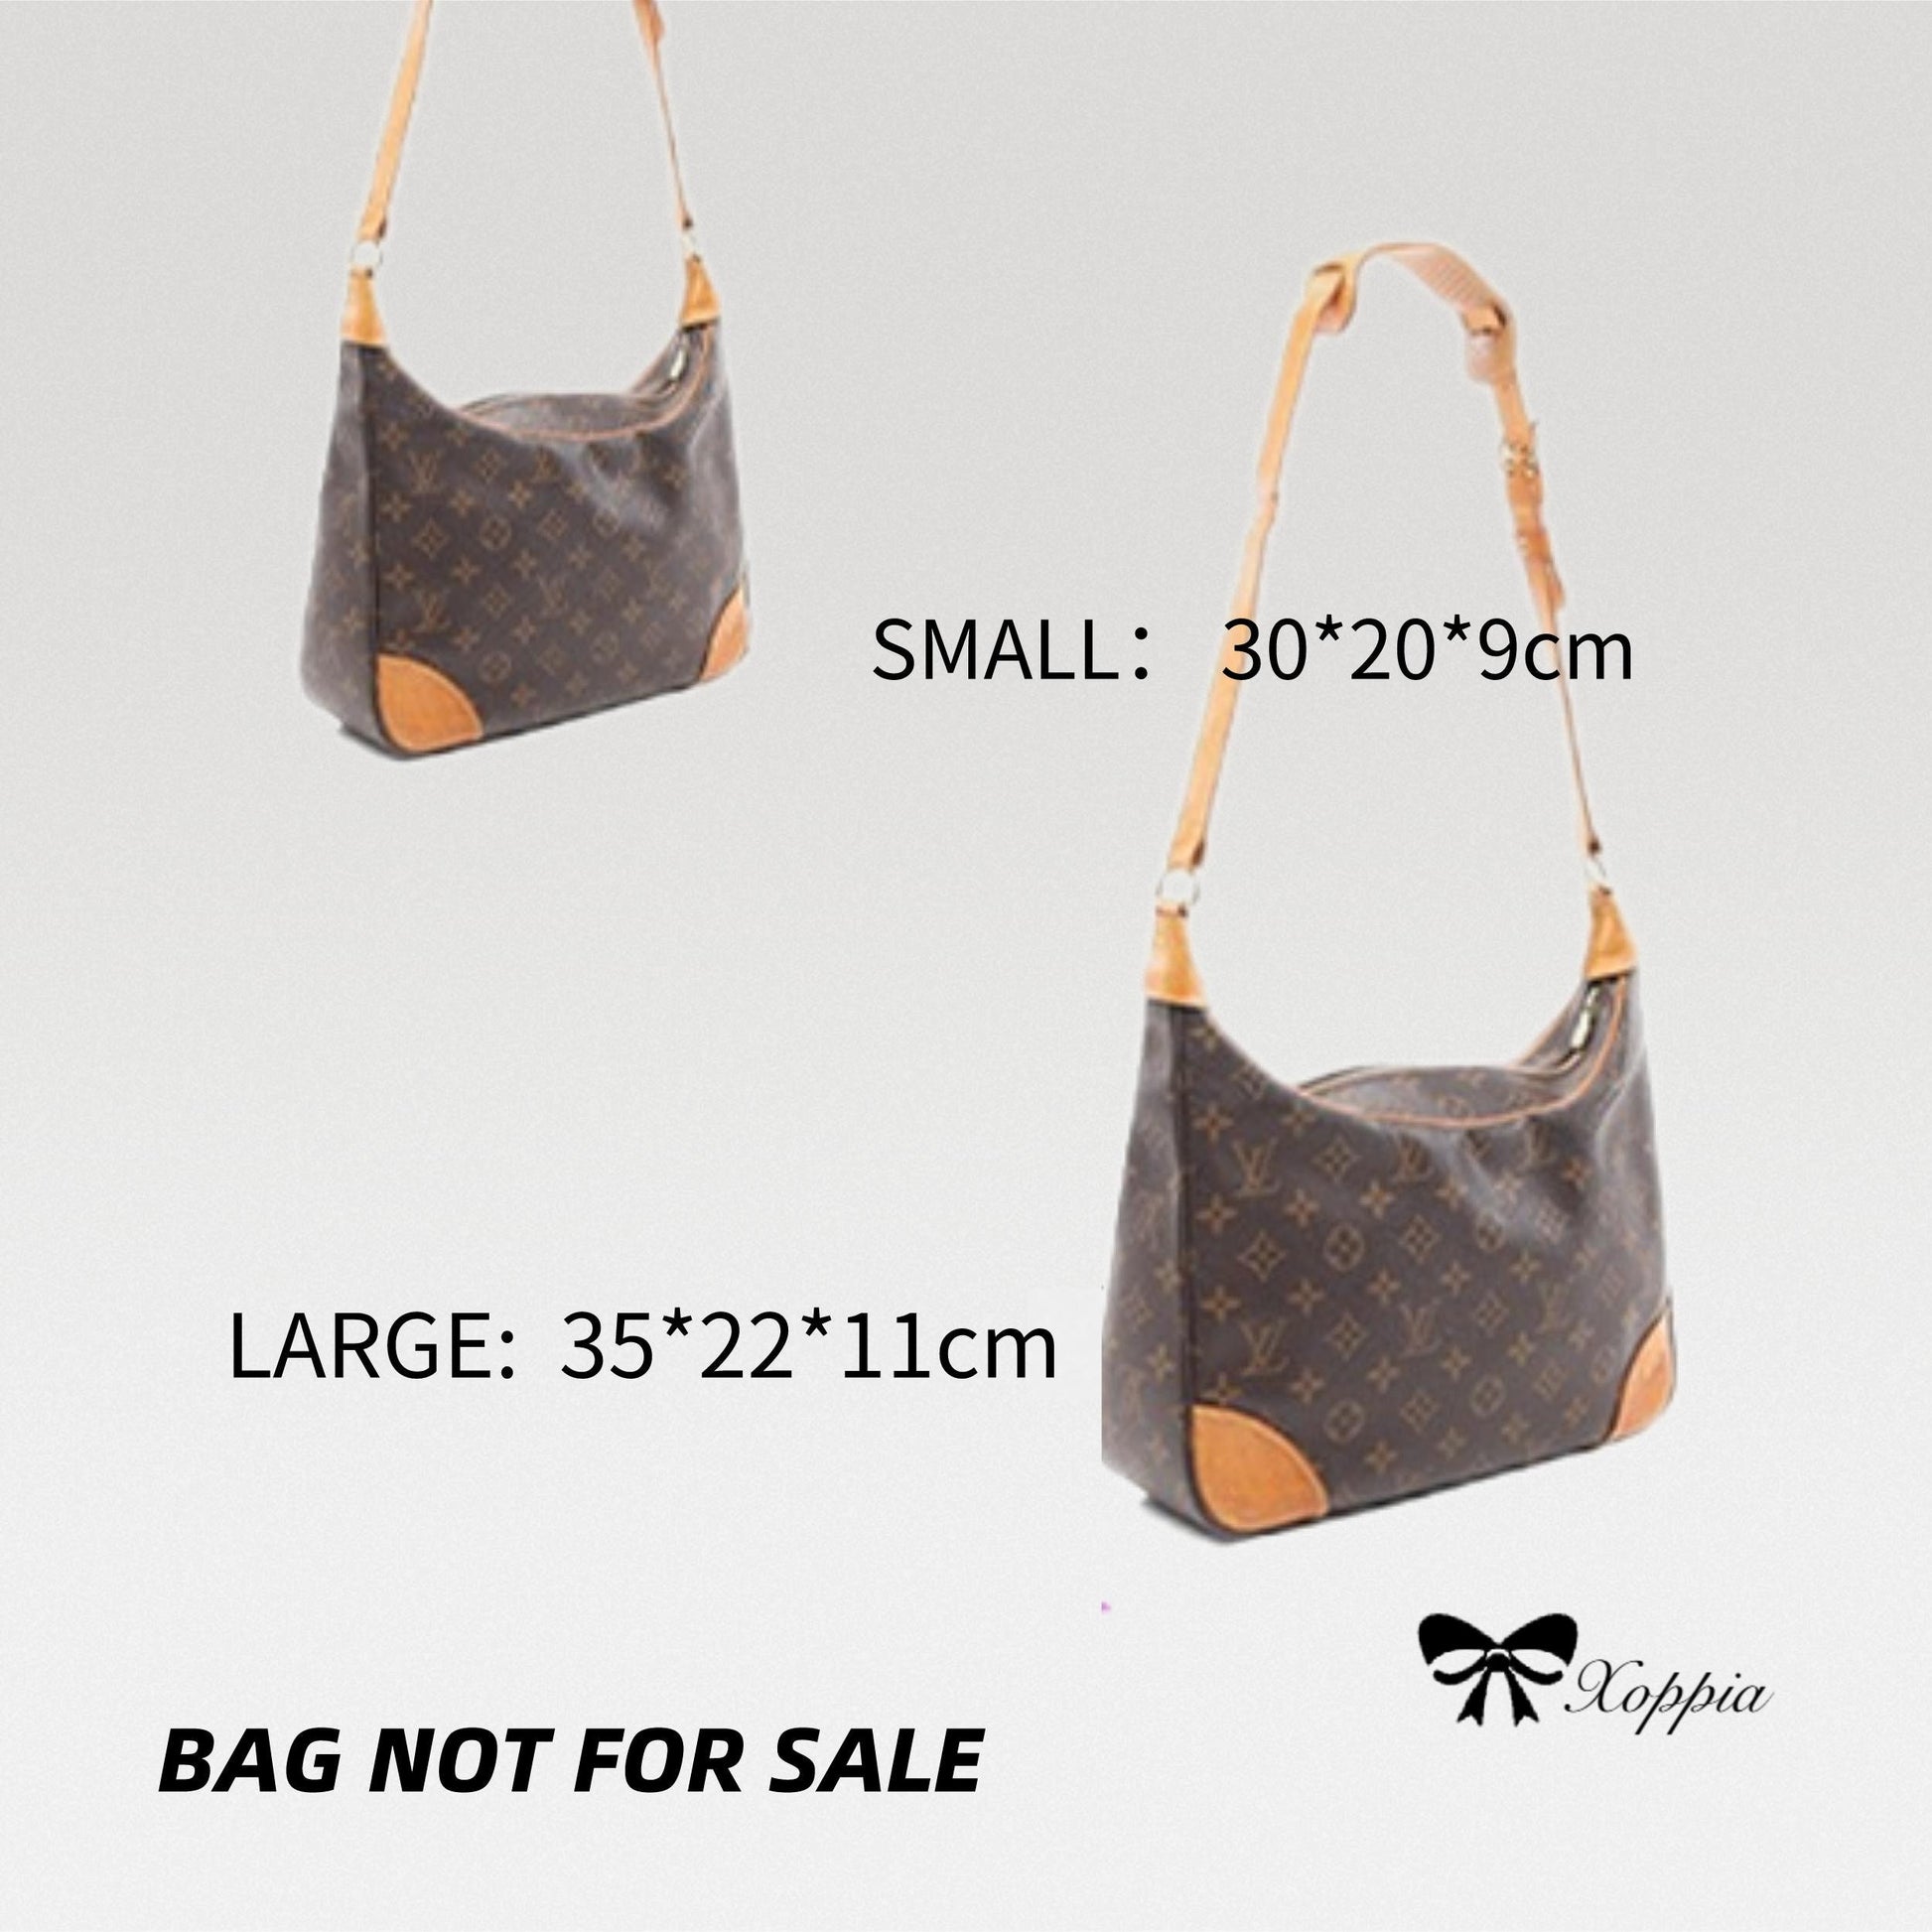 Bag Organizer For LV Boetie Pm Mm Nm. Bag Insert For Handbag Bag. – Xoppia